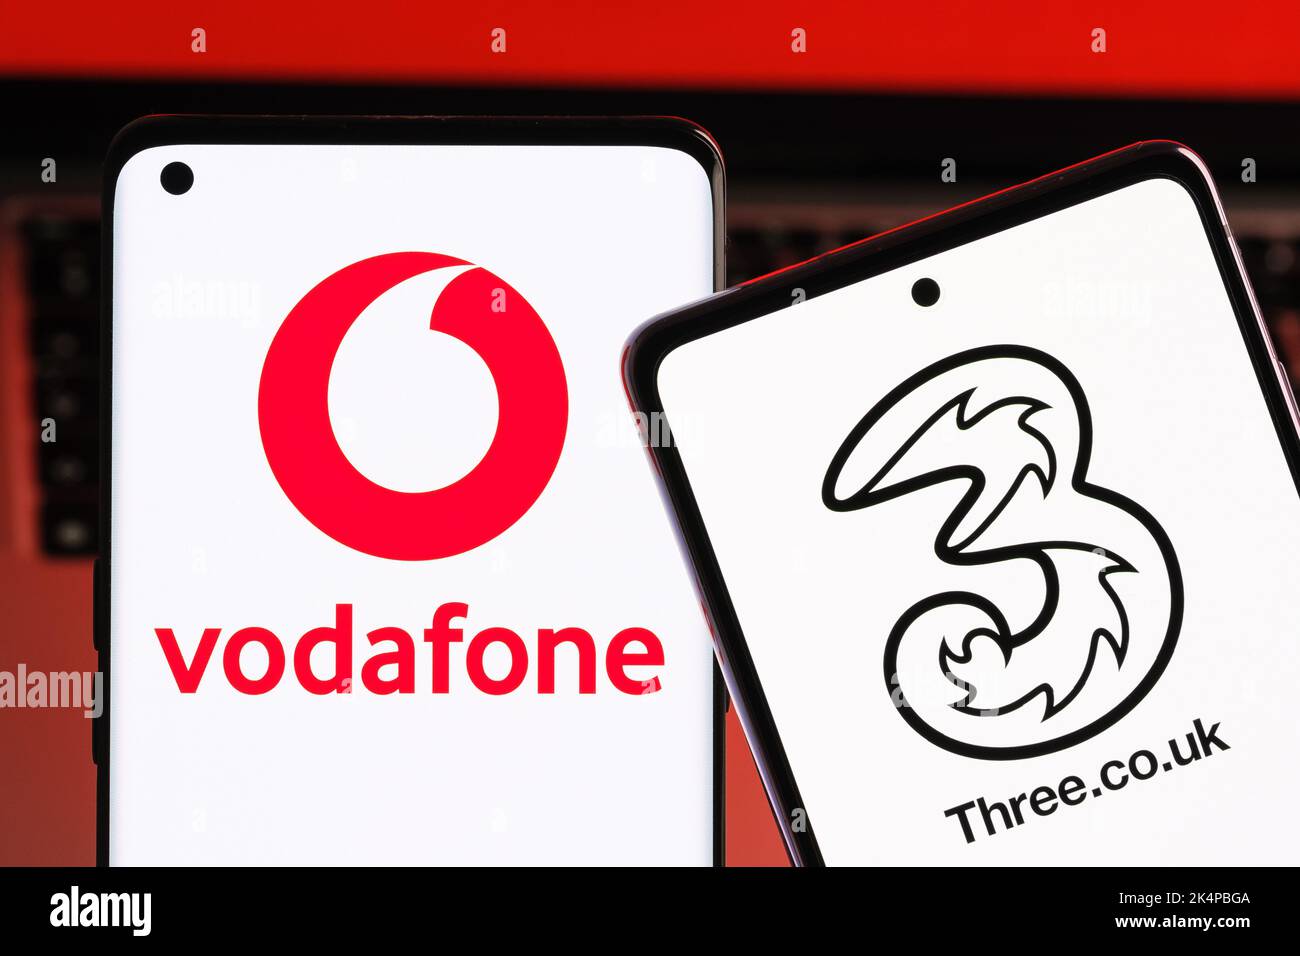 Vodafone und drei mögliche Fusionkonzepte. Die Smartphones werden zusammen mit den Logos der britischen Mobilfunkanbieter auf den Bildschirmen angezeigt. Stafford, Großbritannien, Oc Stockfoto